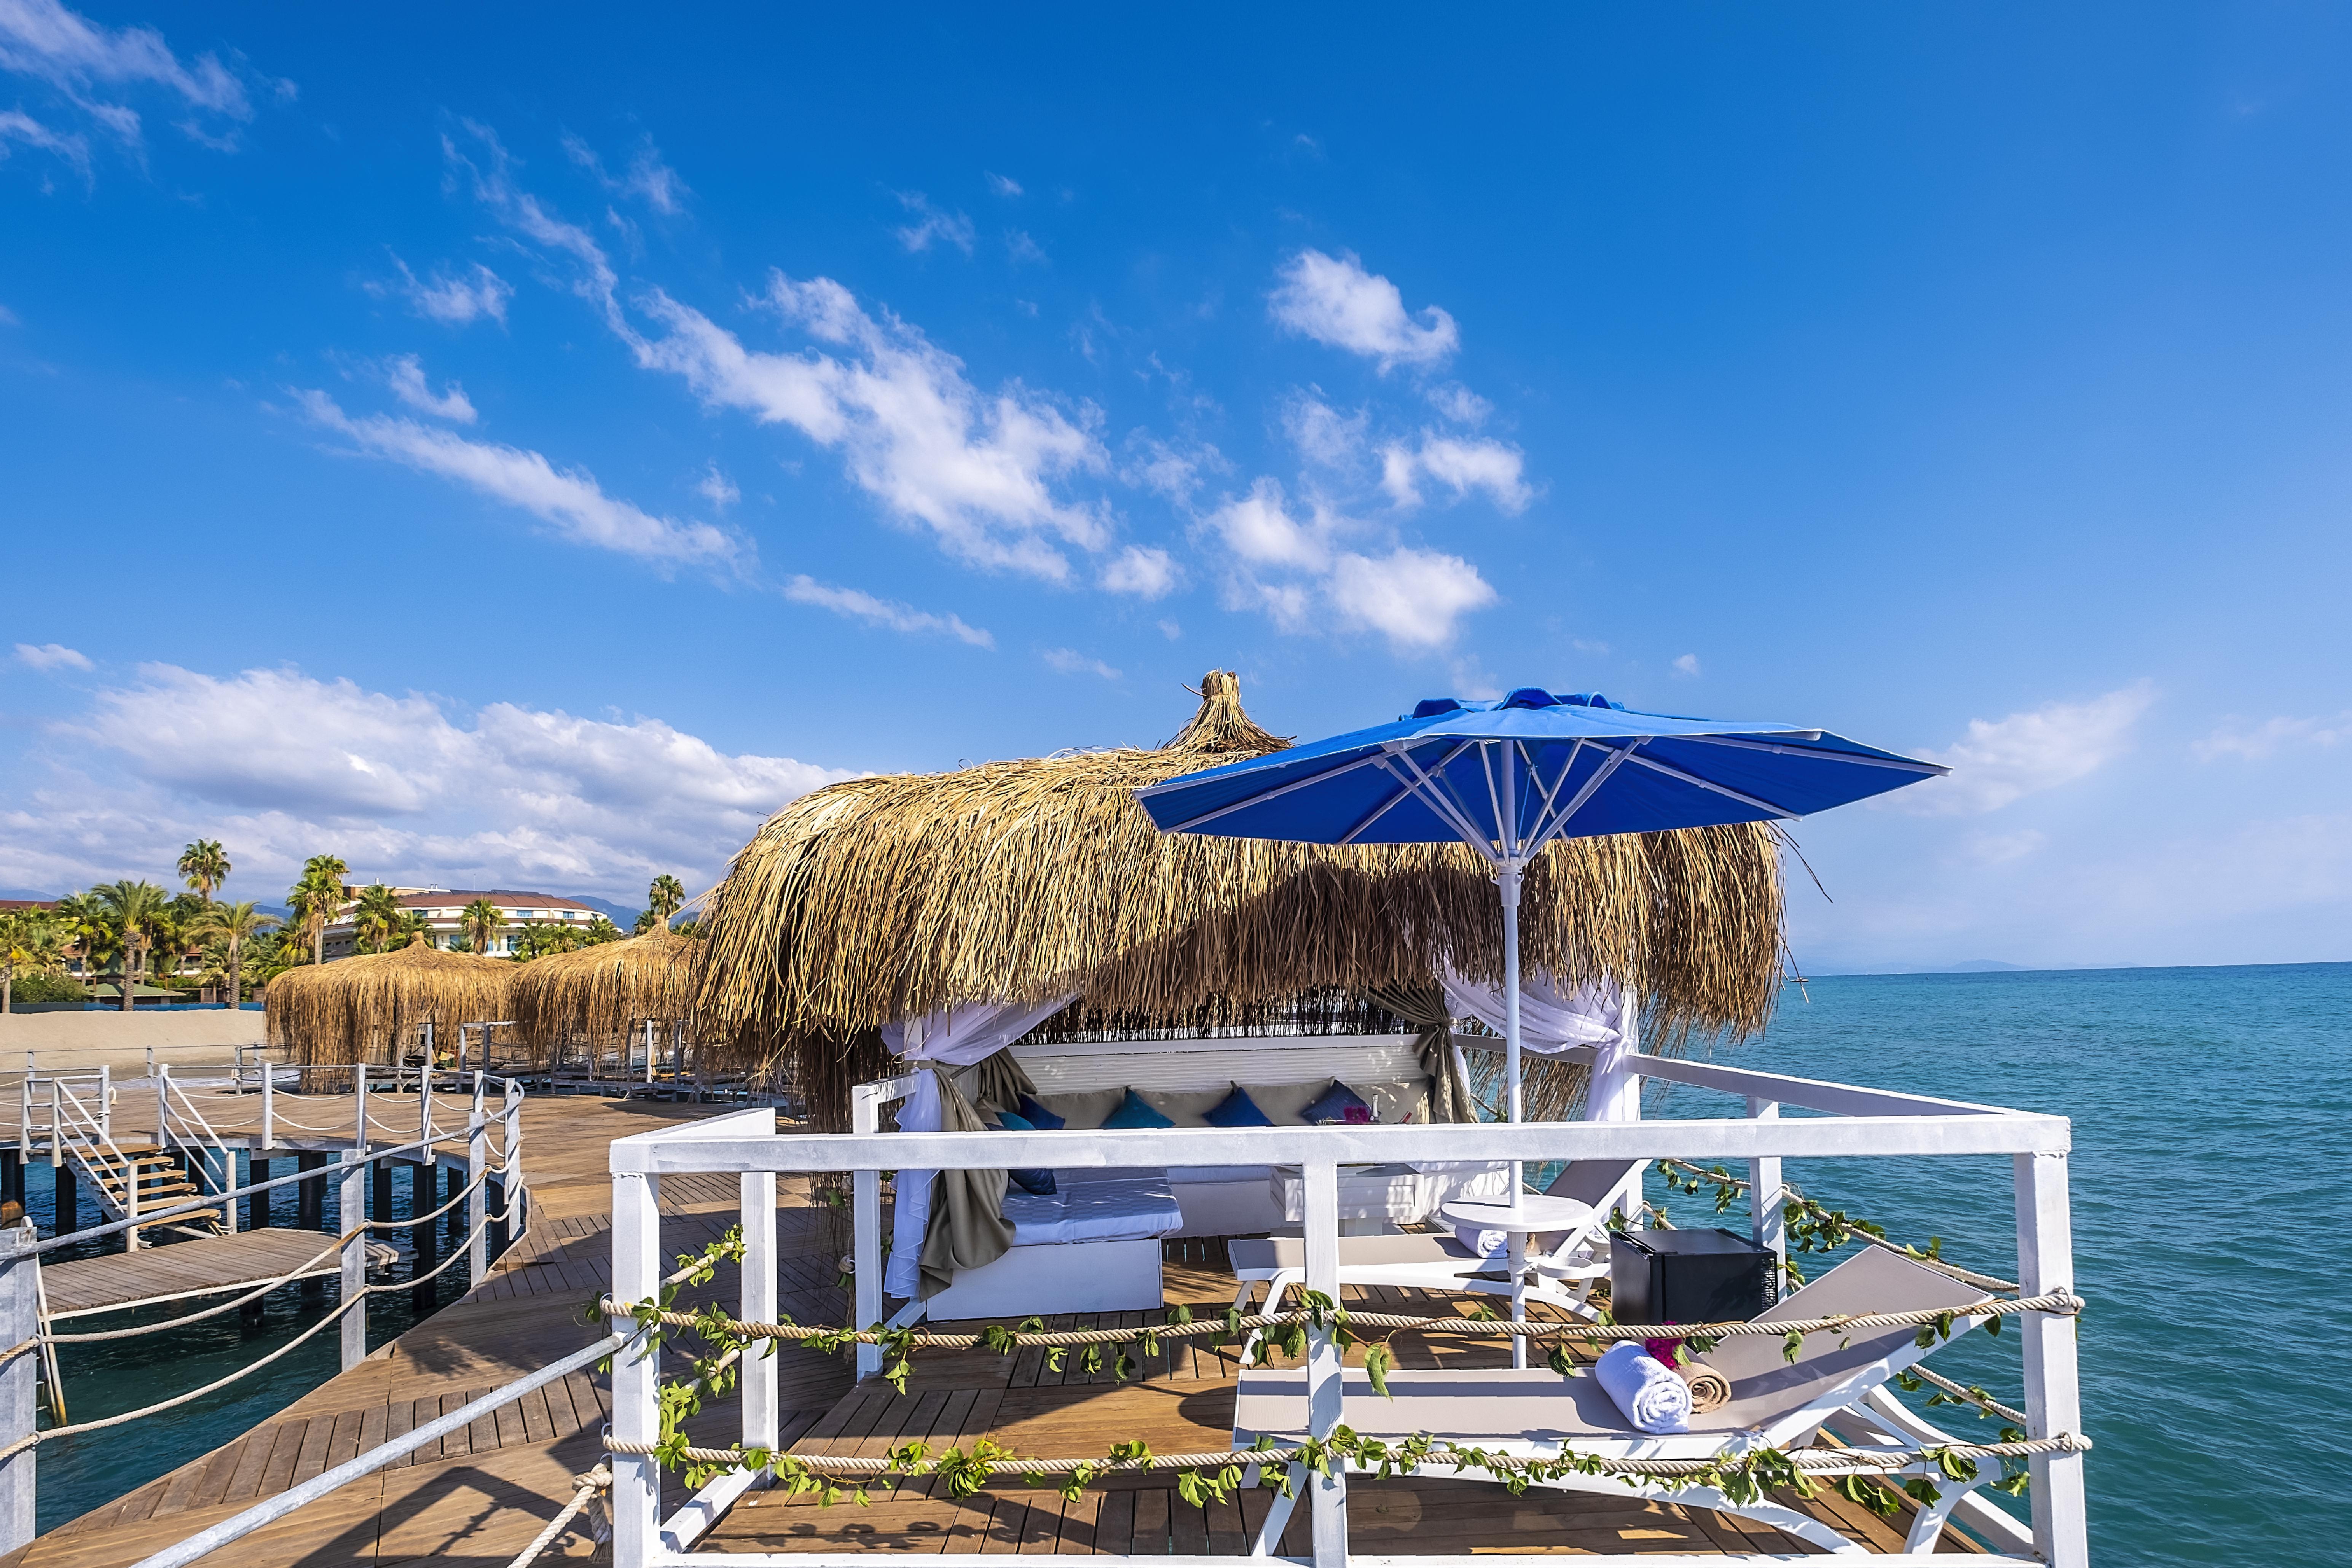 كوناكلي Blue Marlin Deluxe Spa & Resort المظهر الخارجي الصورة